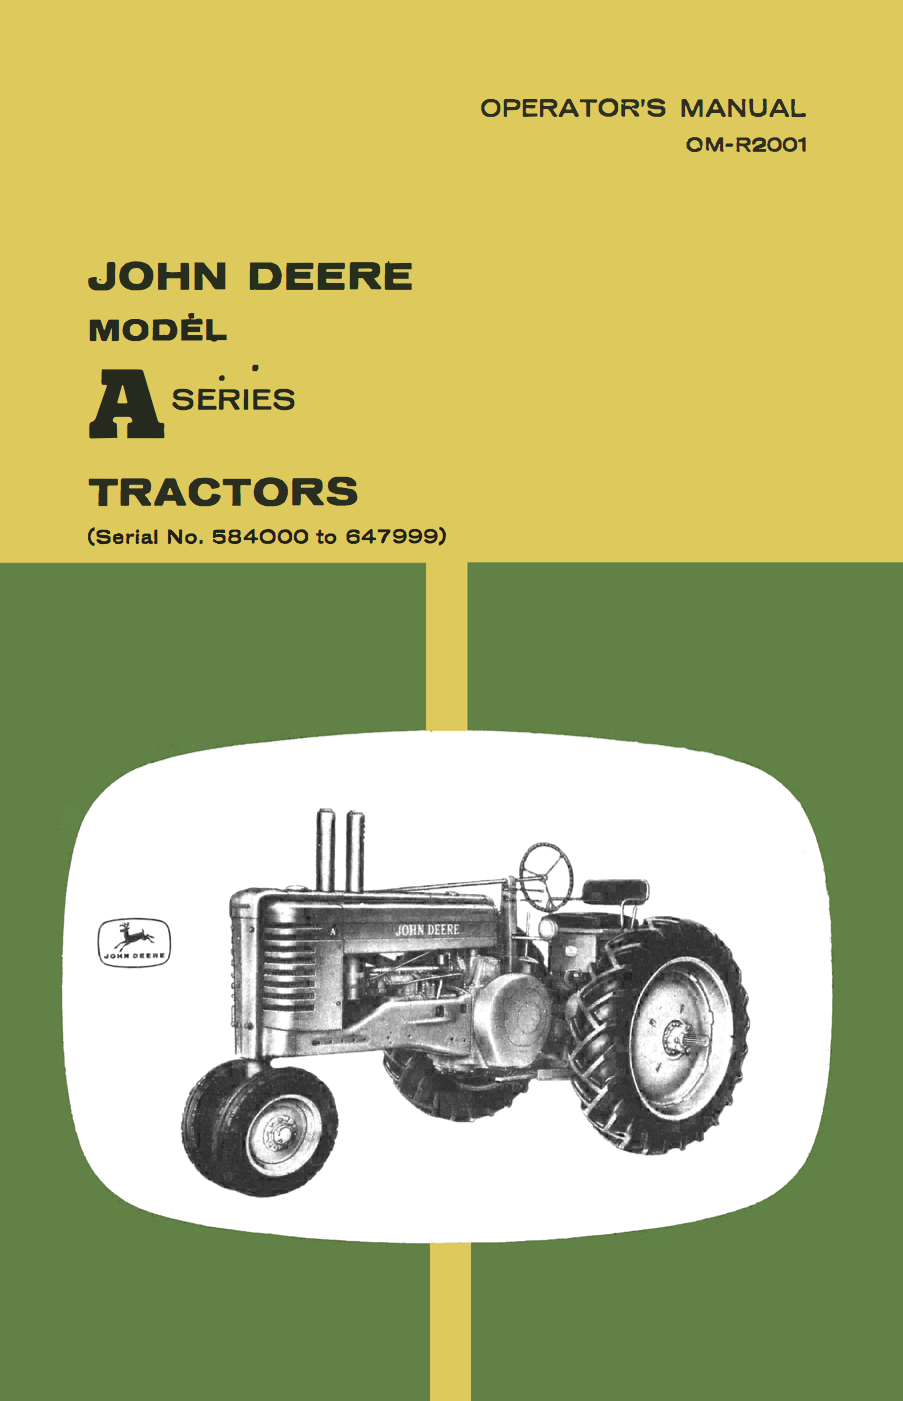 John Deere Model A Series Tractors - Operator's Manual - Ag Manuals - A Provider of Digital Farm Manuals - 1